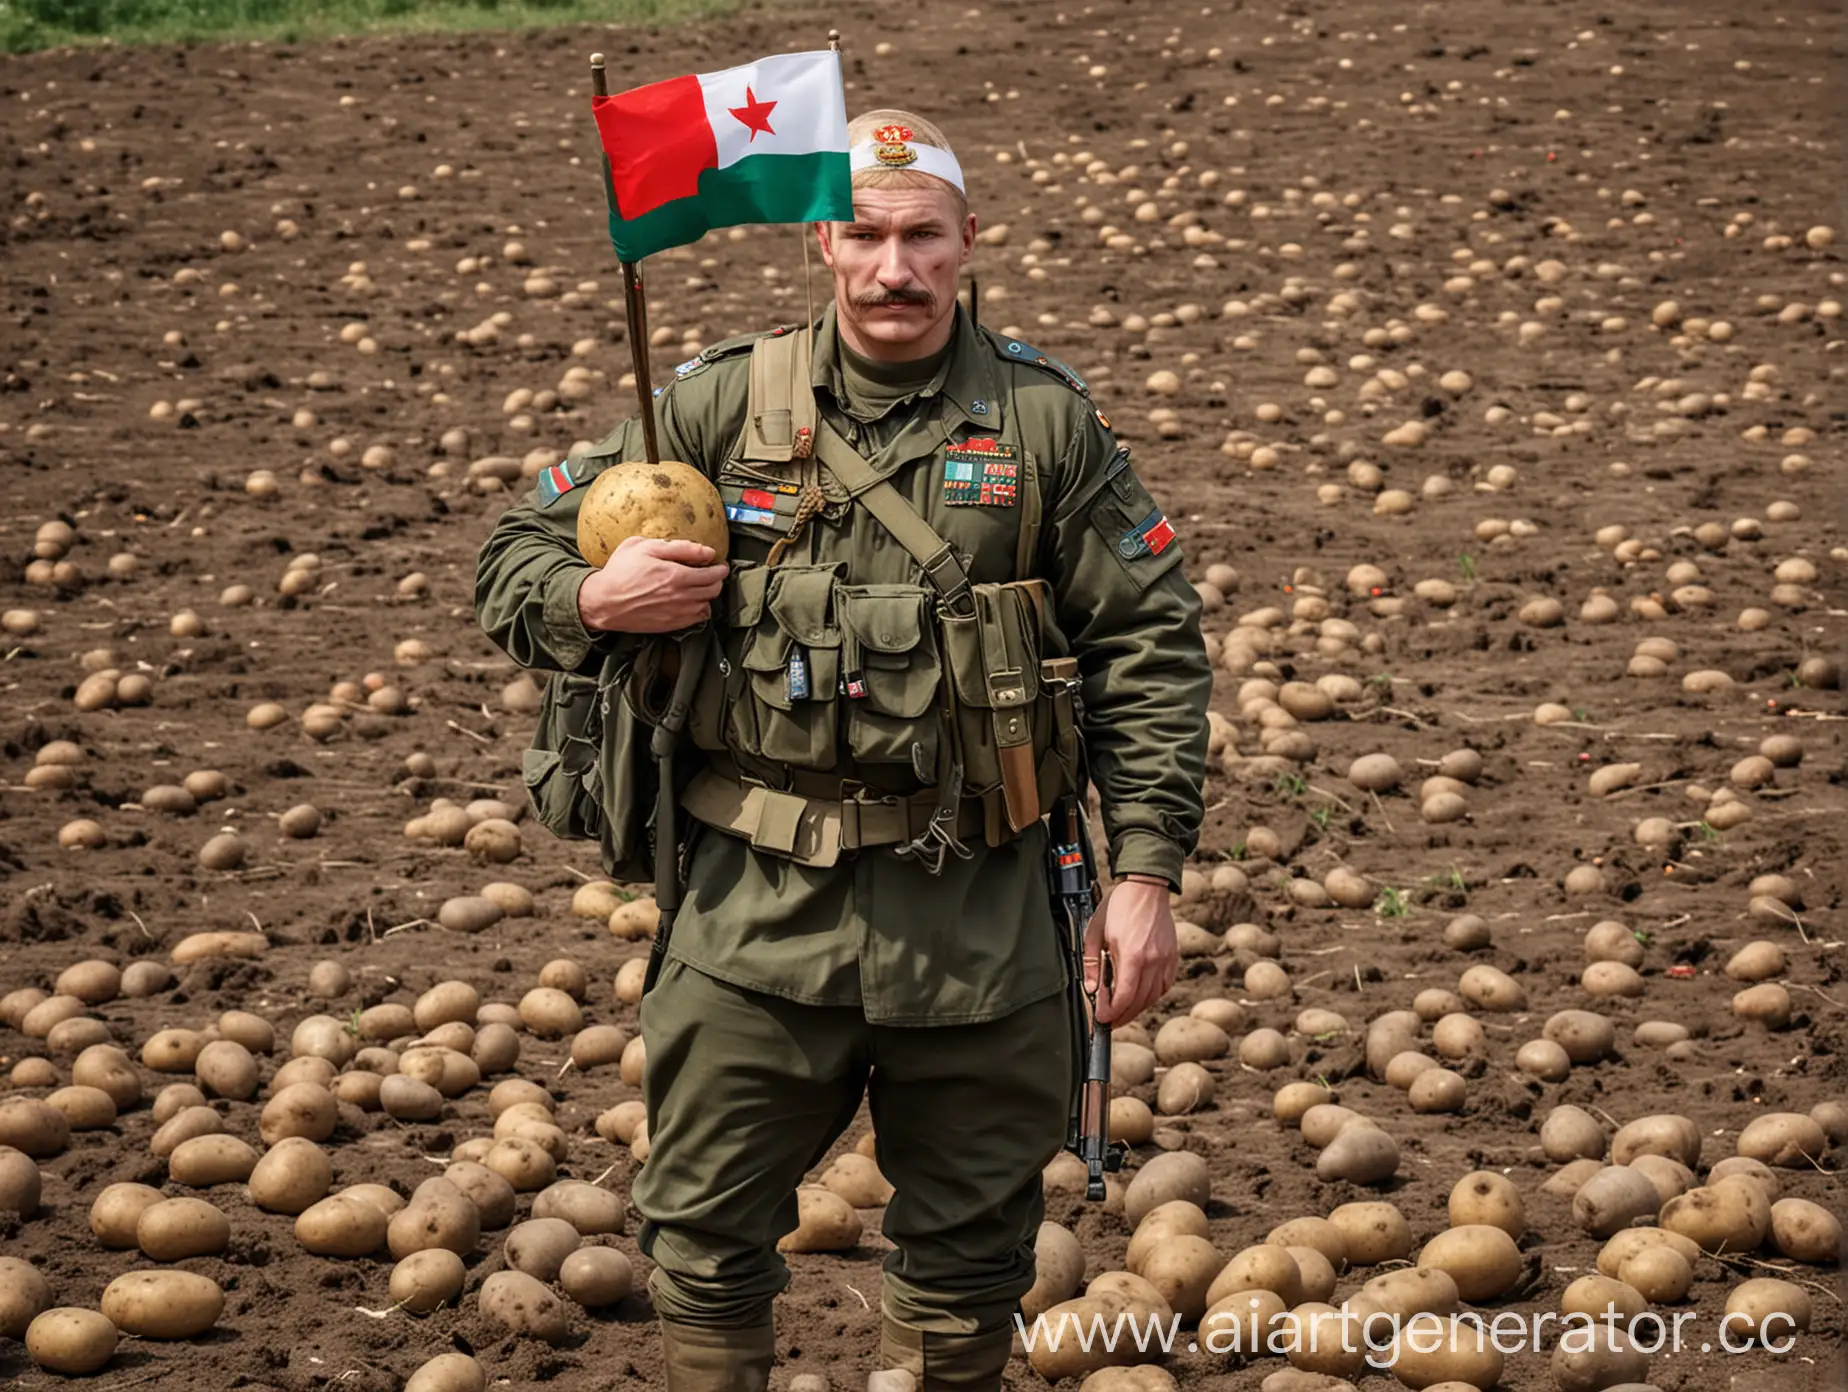 Накаченная картошка, военная форма, автоматы в руках картошки, повязка с флагами России и Беларуси, ZV СВО, ВОЙНА, картошка на войне, картошка рембо